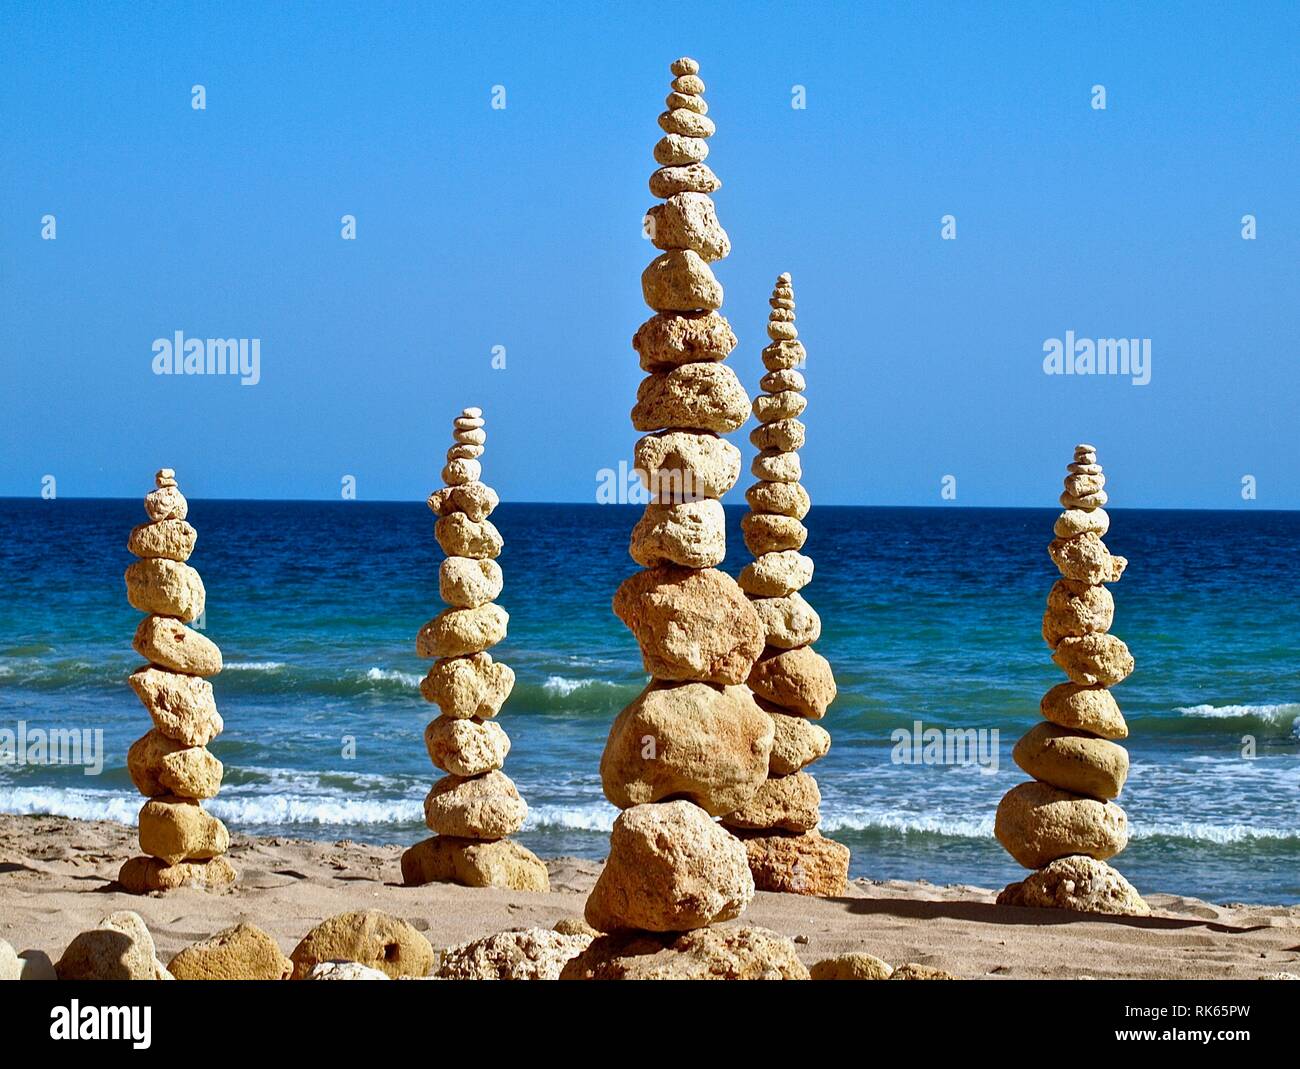 Cumuli di pietre e ciottoli o pila di pietre presso la spiaggia di stand per la vita interiore equilibrio Foto Stock